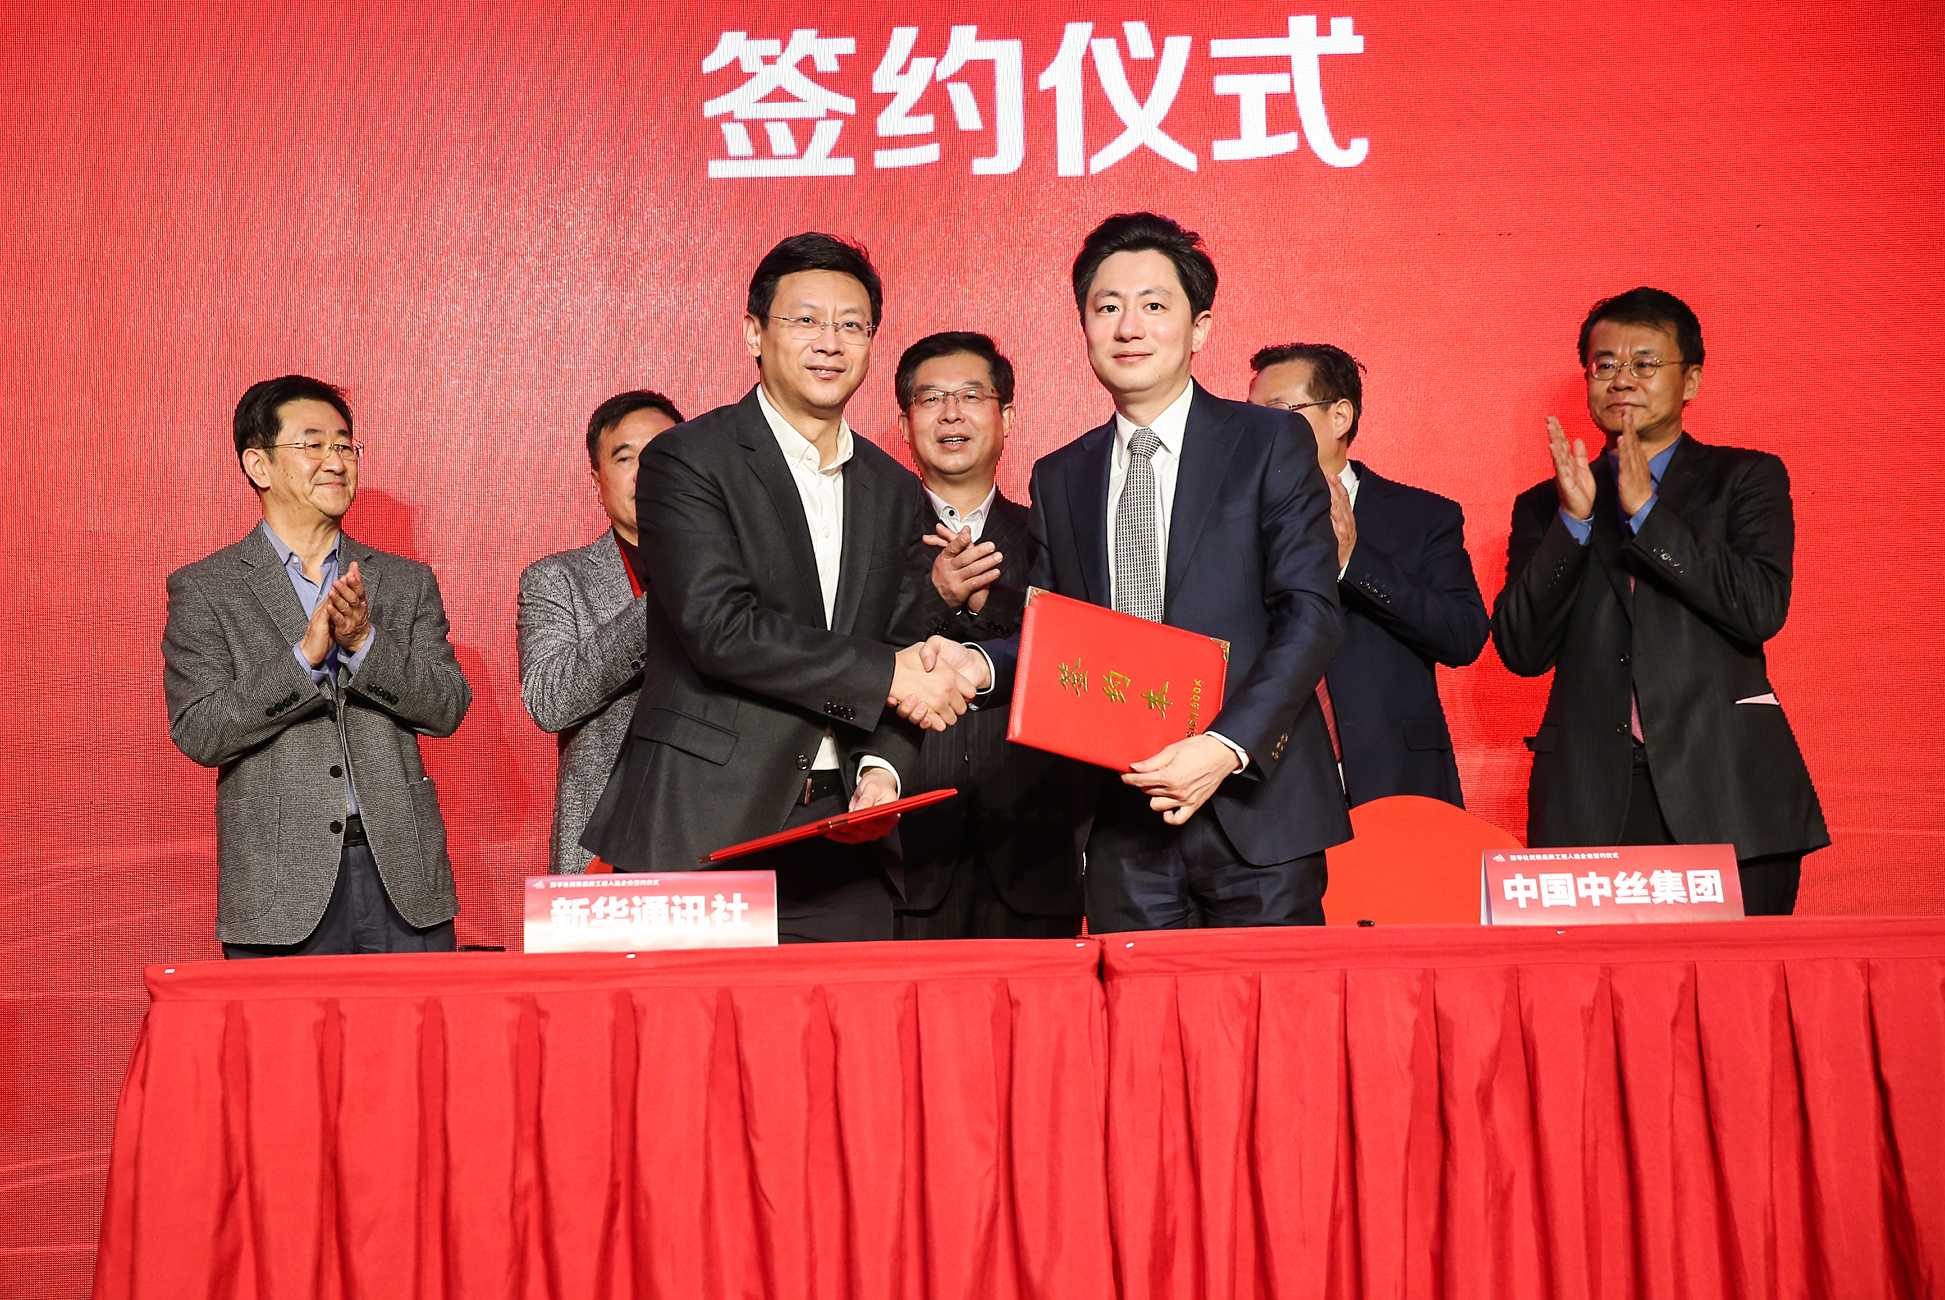 中国中丝集团有限公司董事长王波、新华社新闻信息中心主任储学军代表双方签约。